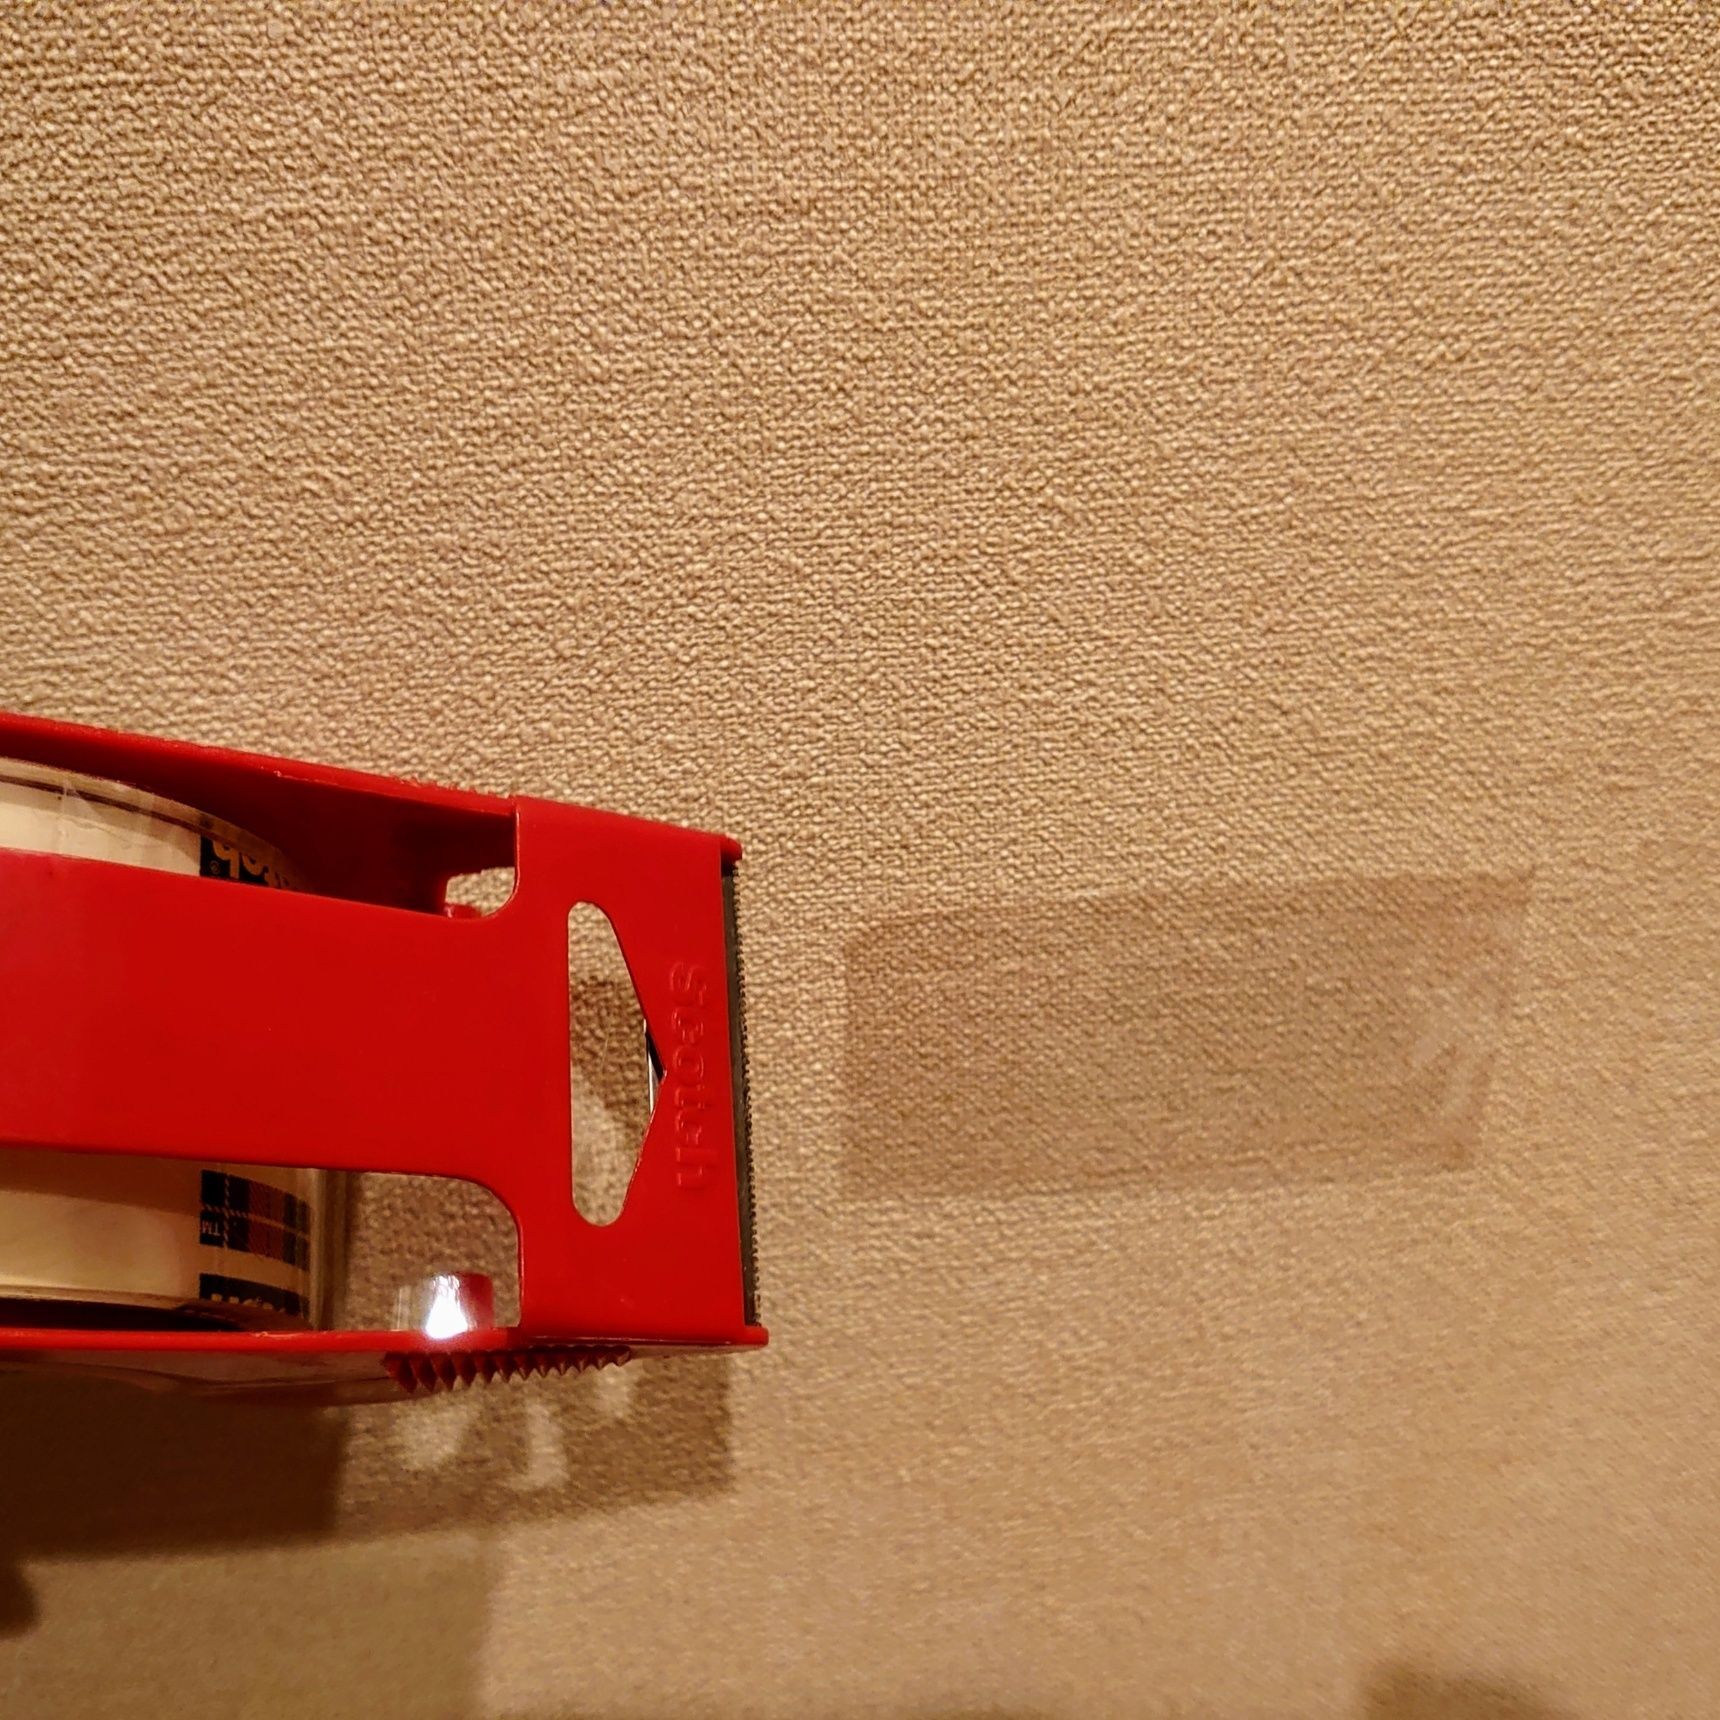 壁に穴をあけたくないので、テープを貼り